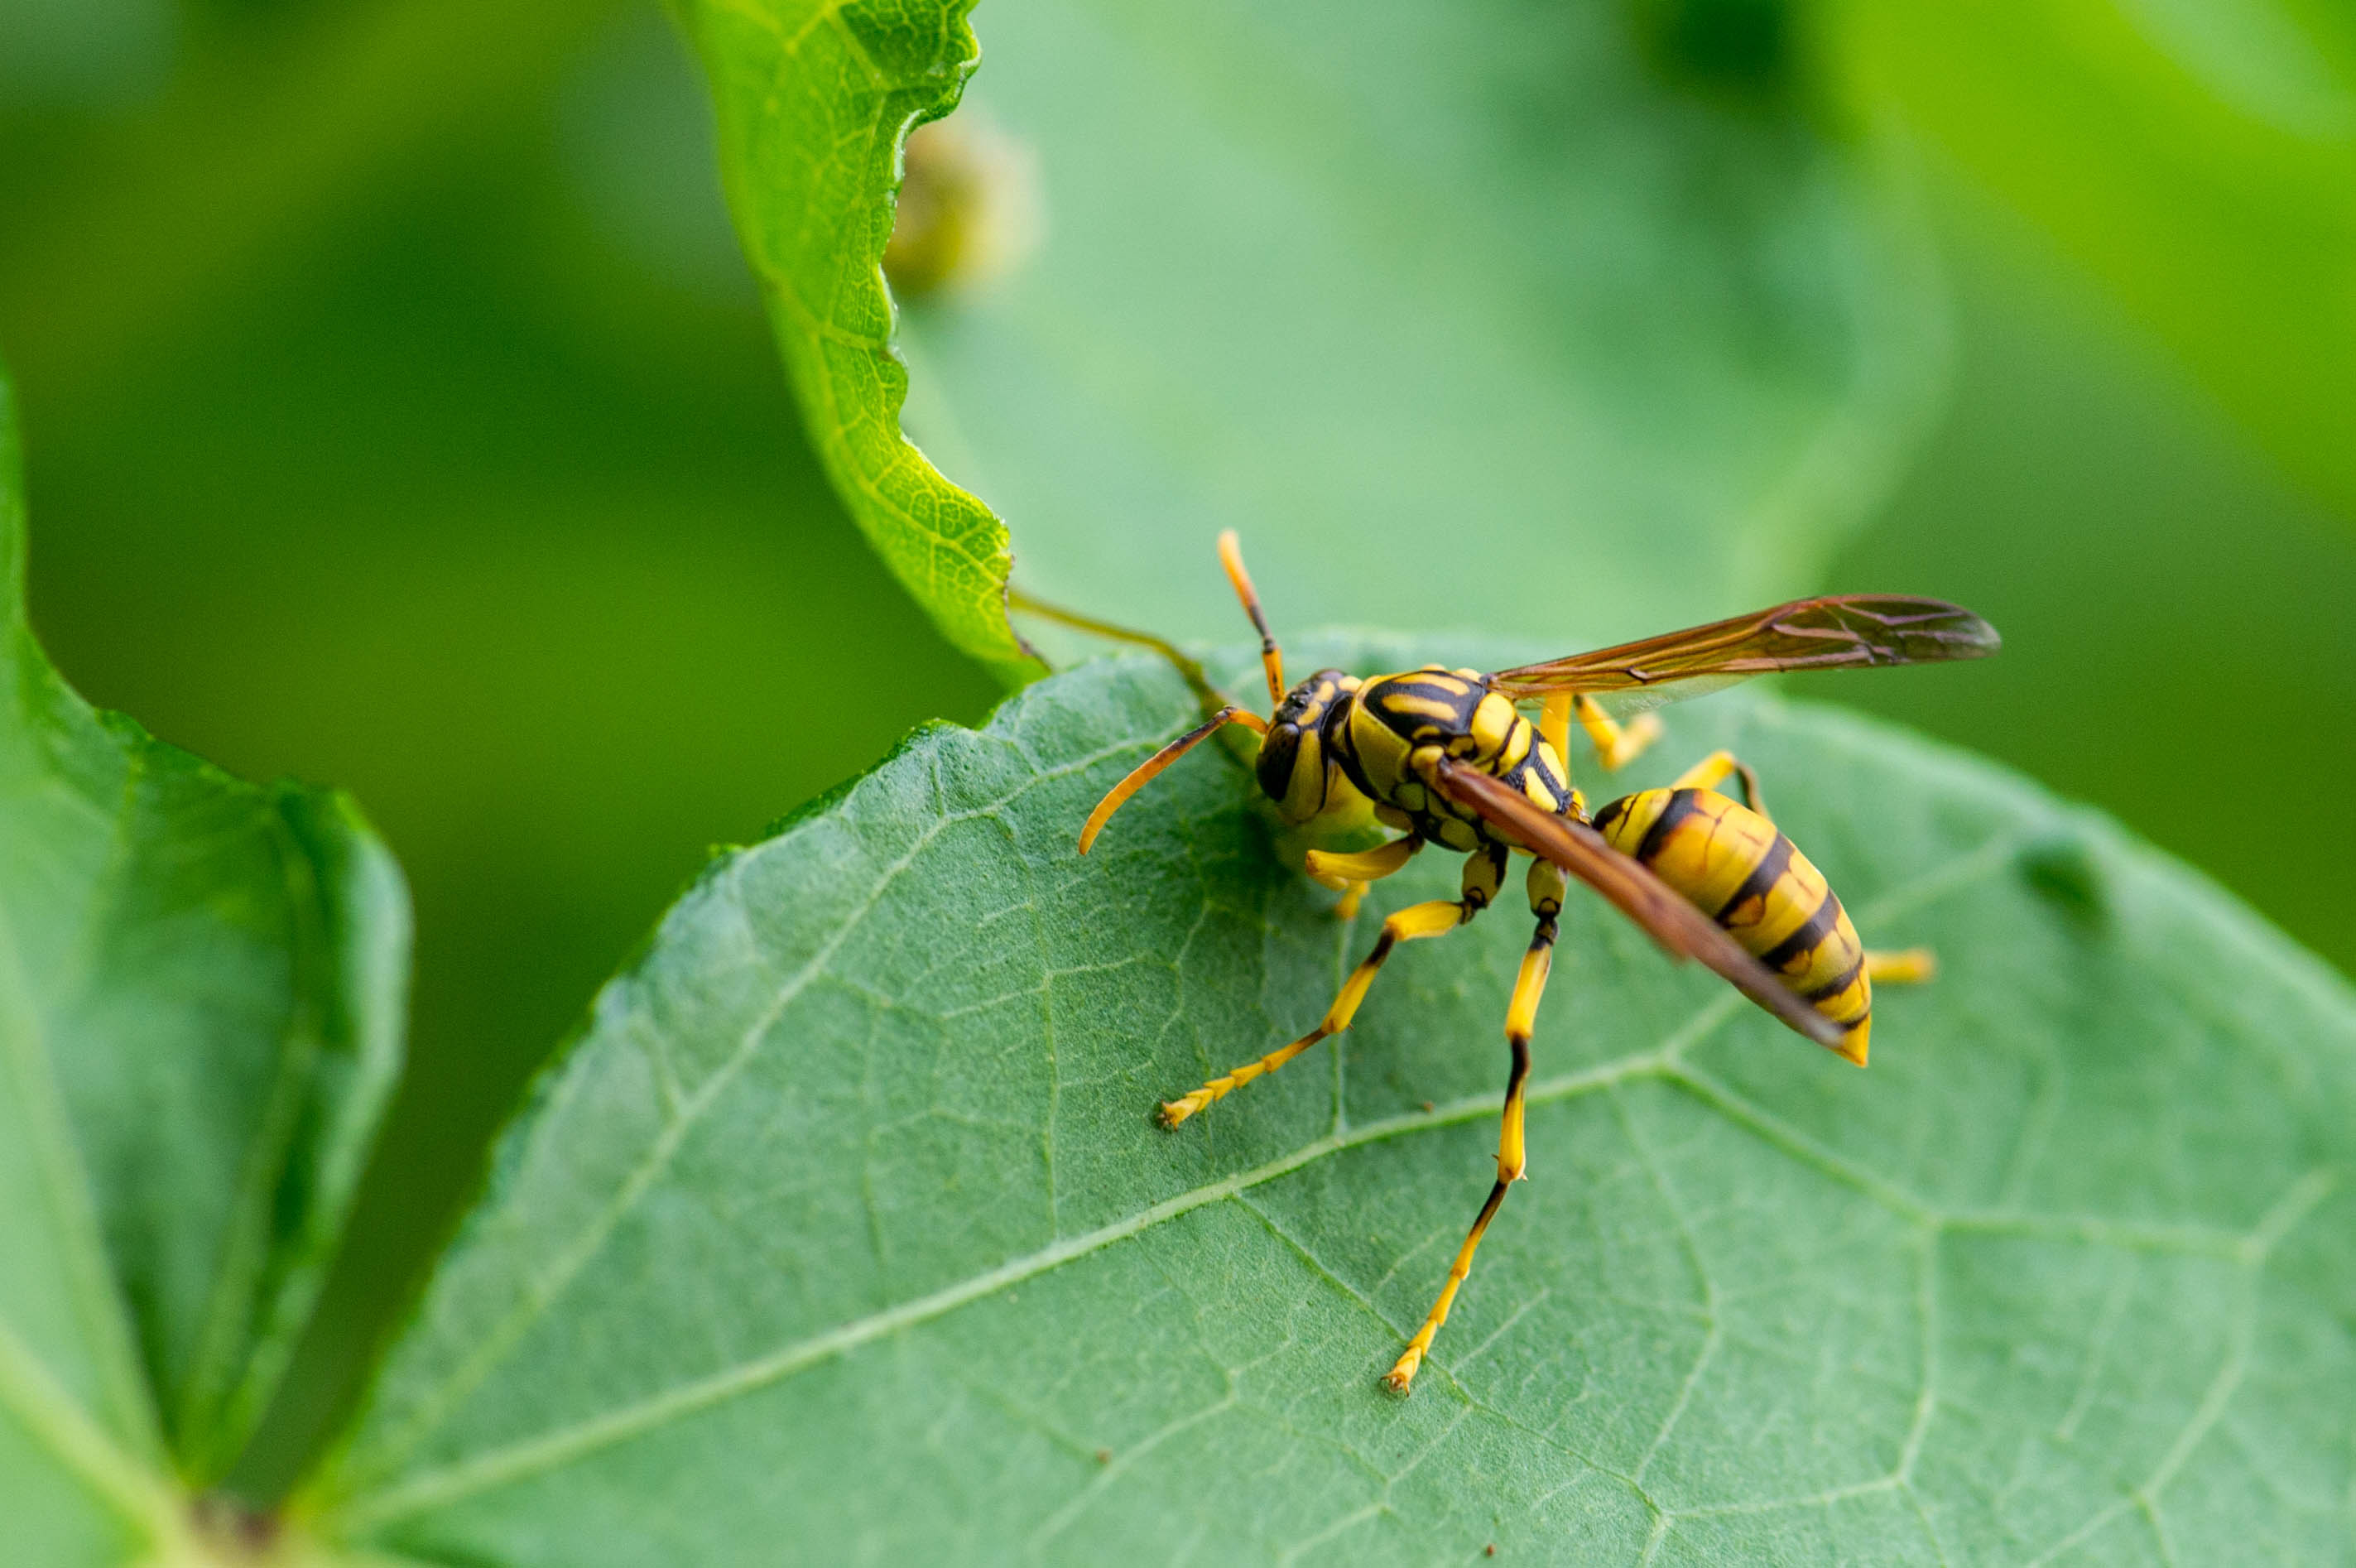 ヤエヤマアシナガバチ 虫の写真と生態なら昆虫写真図鑑 ムシミル